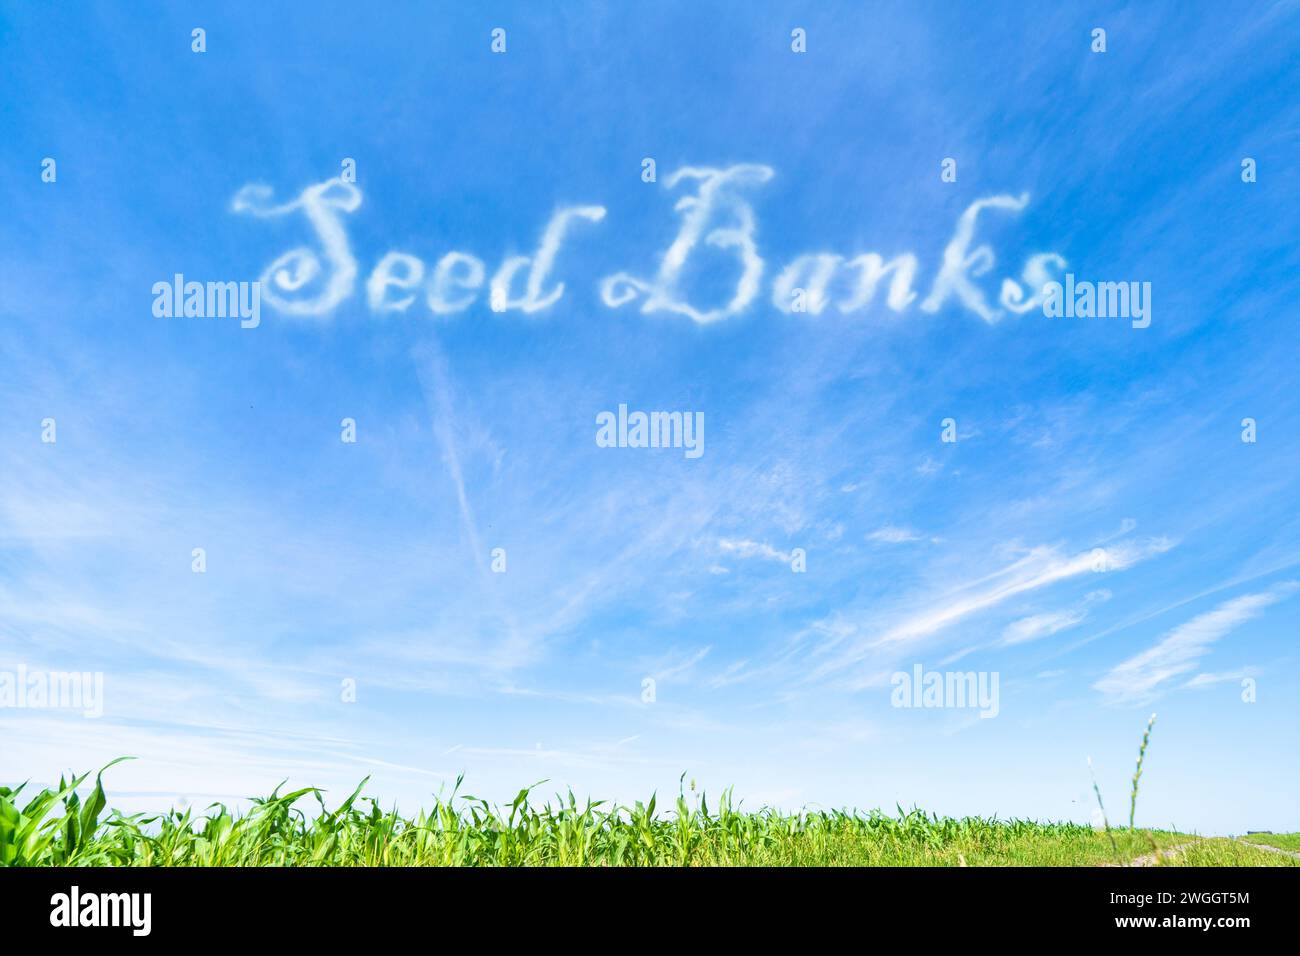 Saatgutbanken: Anlagen zur Lagerung und Konservierung von Pflanzensamen für künftige Restaurationsbemühungen. Stockfoto